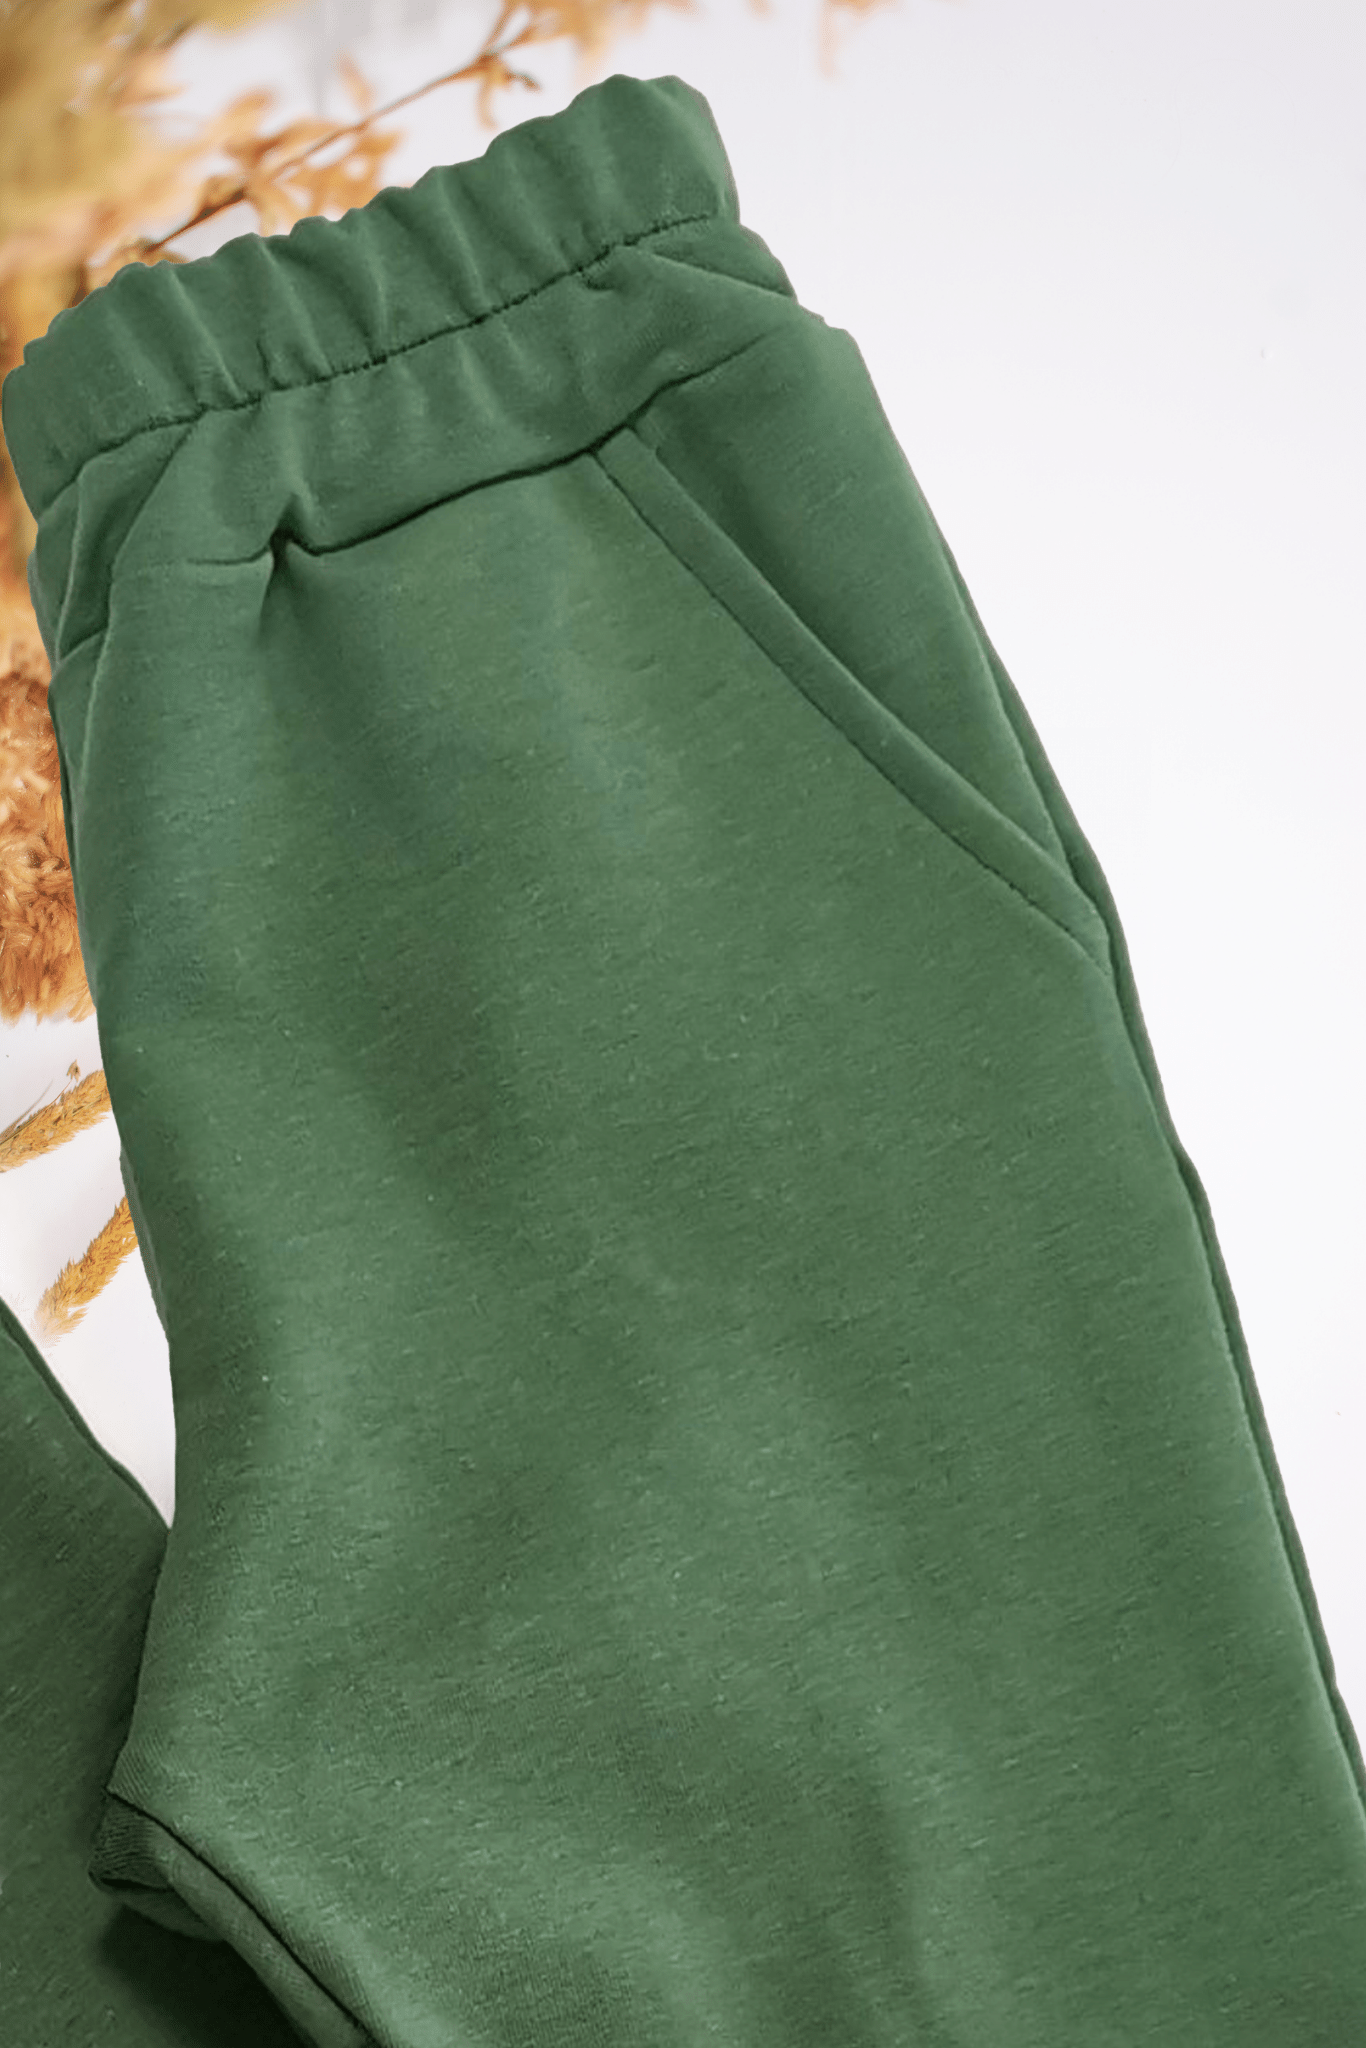 Klasikinės vaikiškos kelnės | Samanų žalios spalvos | Be pūkelio - Stiliaus detalė